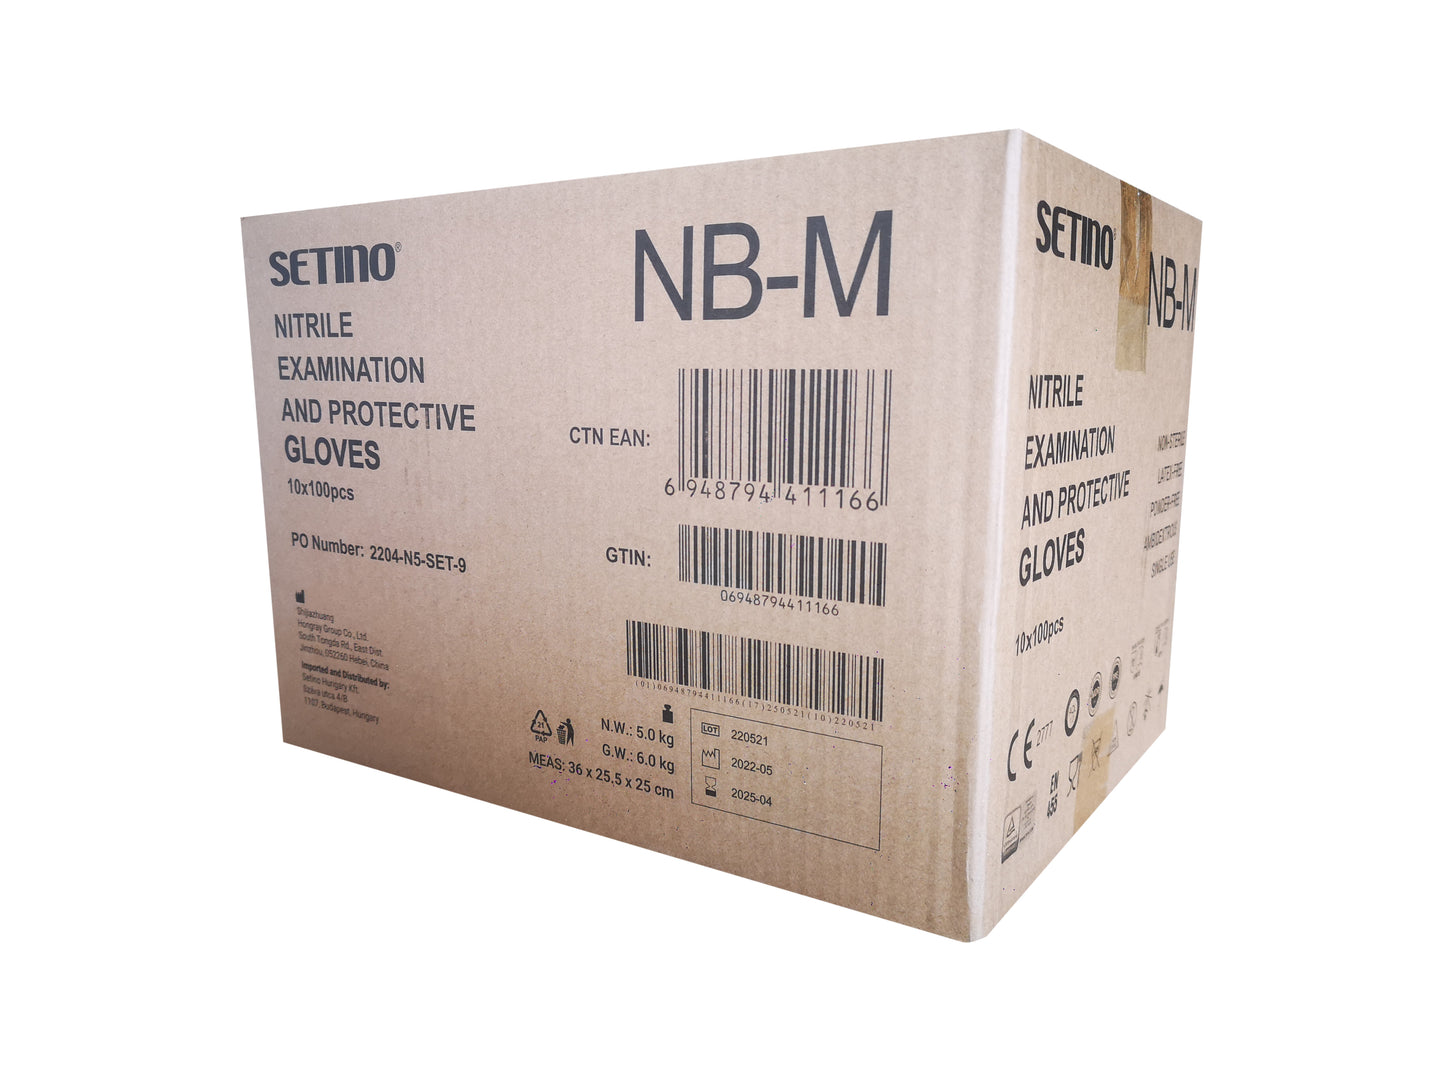 NPF4001-4005 ekzaminim nitrili dhe doreza mbrojtëse pa pluhur të zezë 5 gram